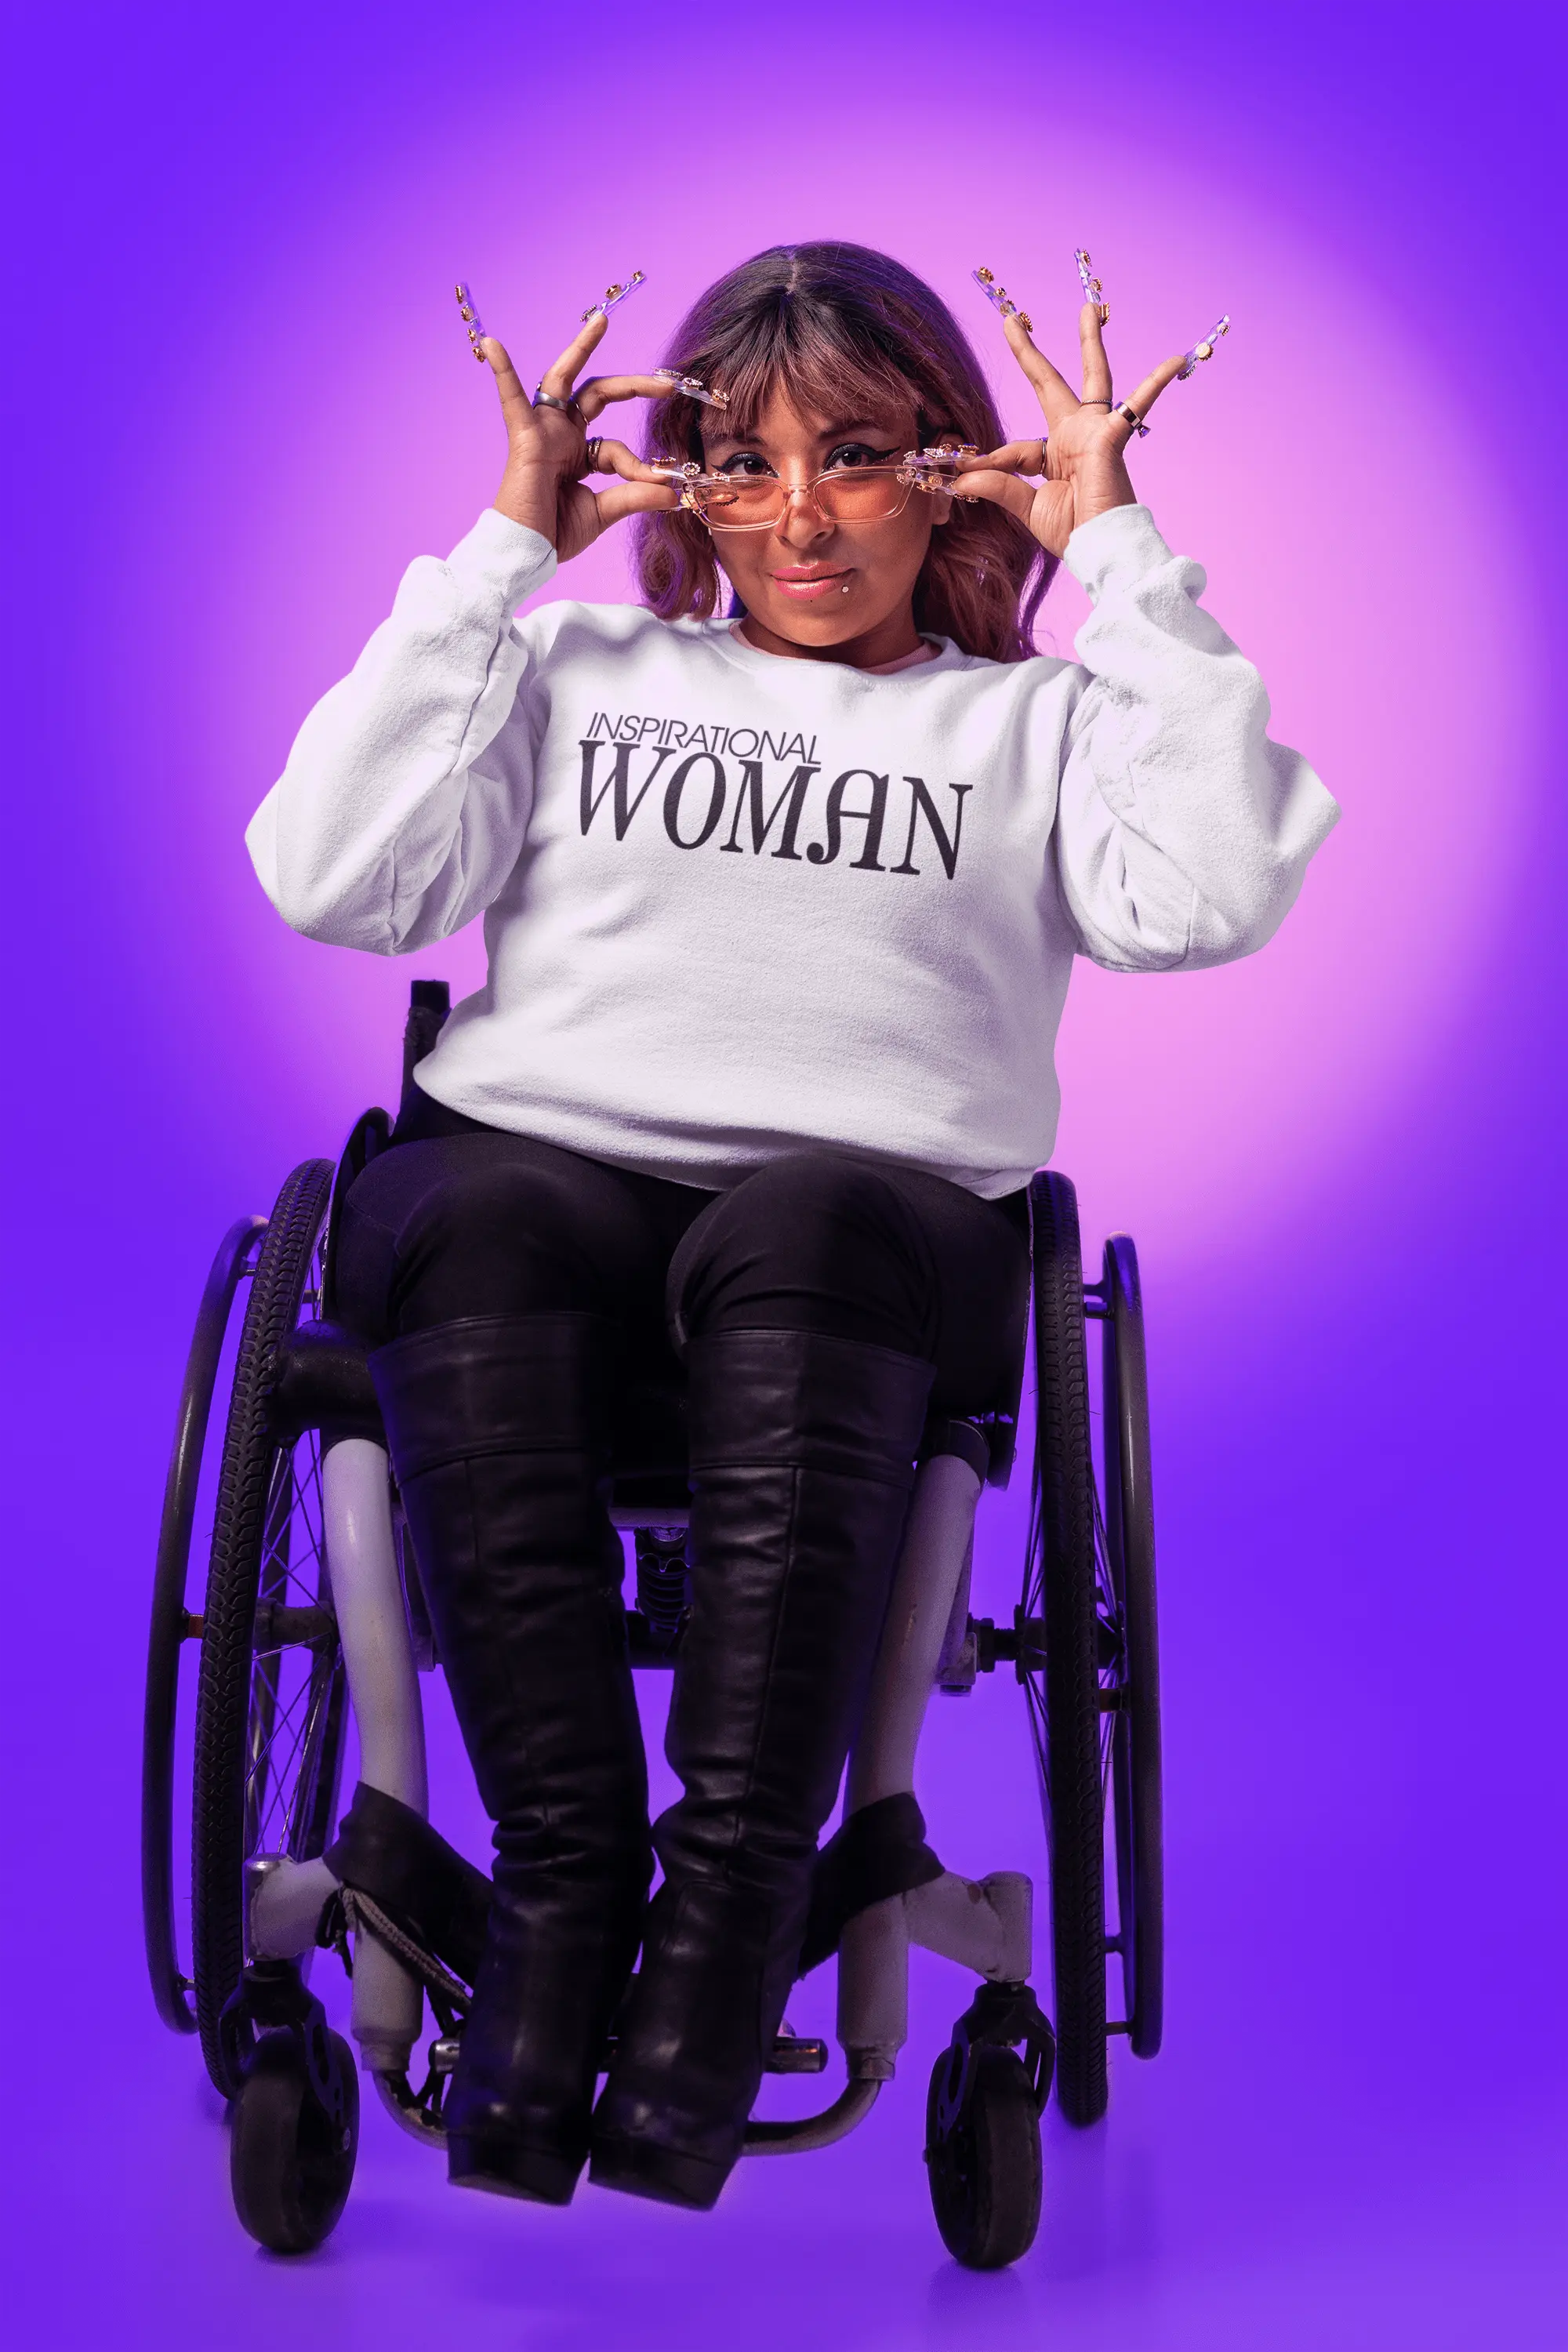 Inspirational Woman Sweatshirt - Image #3